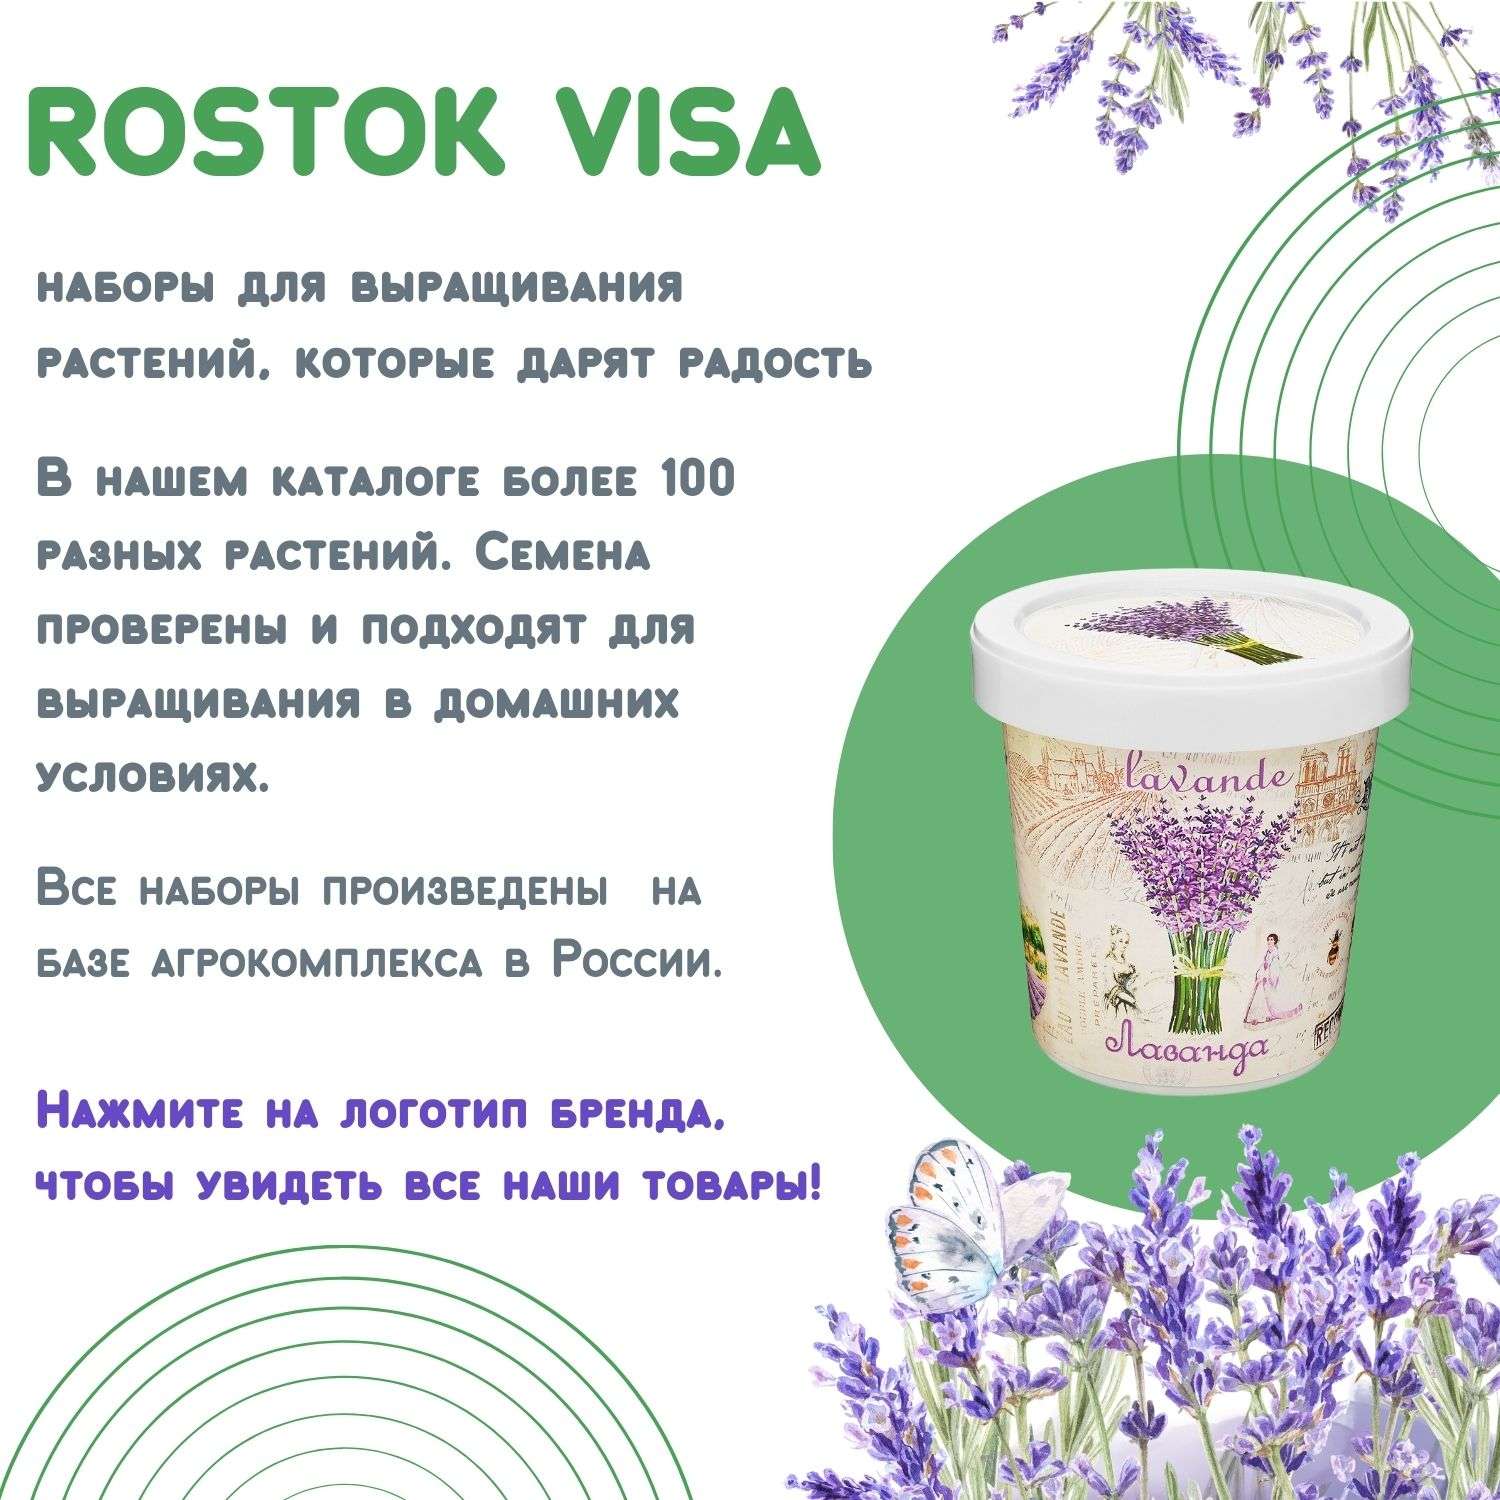 Набор для выращивания растений Rostok Visa Вырасти саам Мяту в подарочном горшке - фото 6